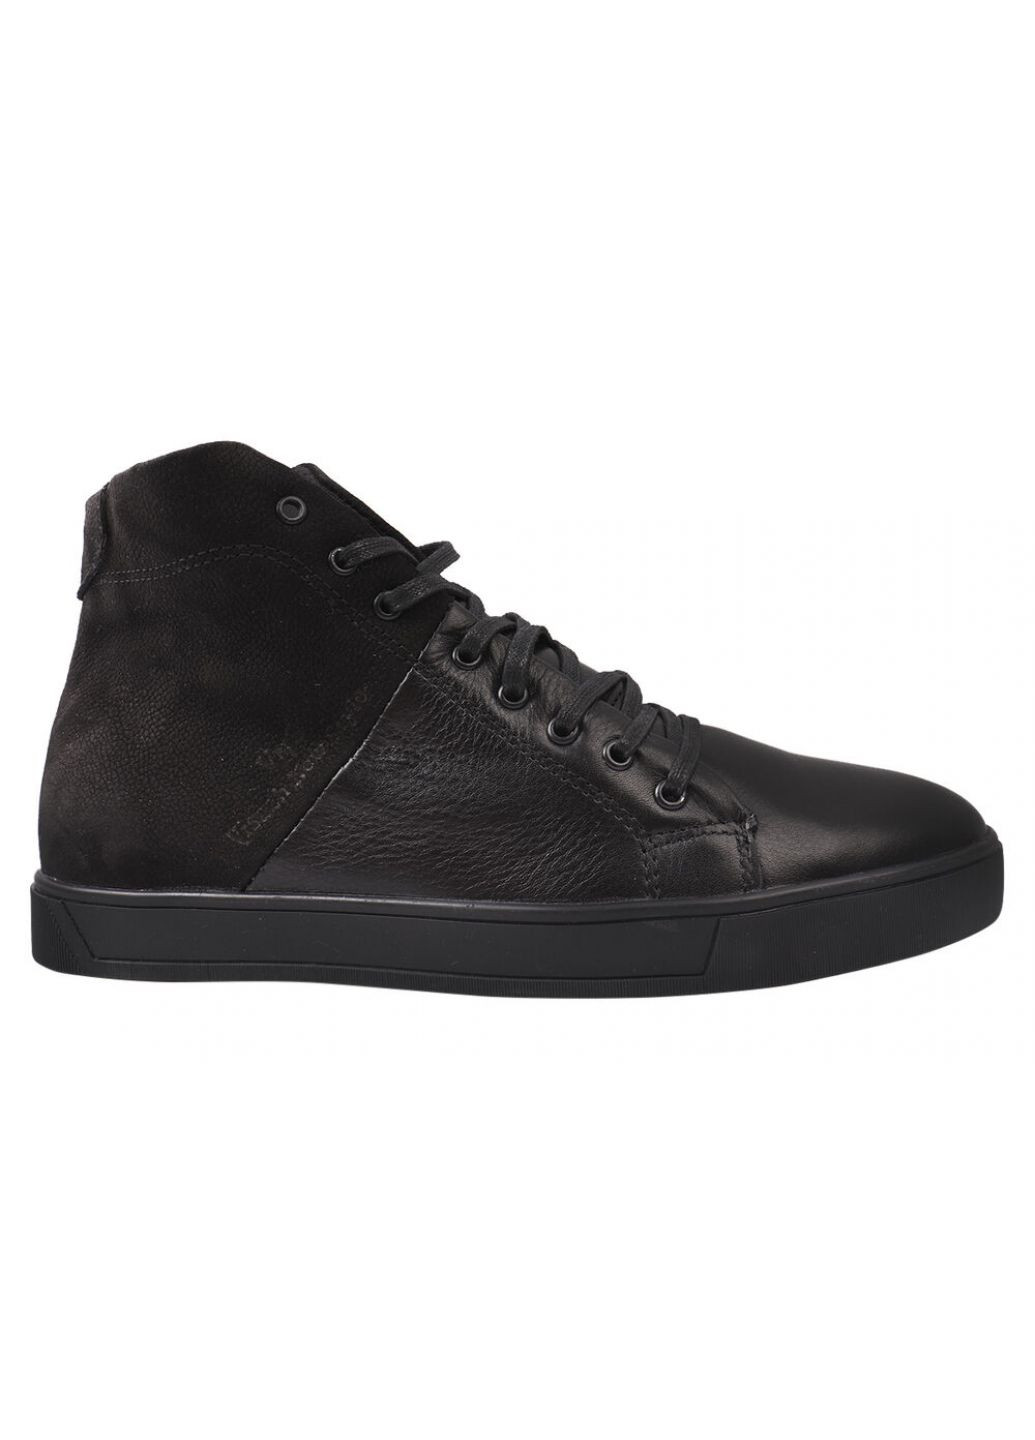 Черные ботинки мужские из натуральной кожи, на шнуровке, черные, Visazh